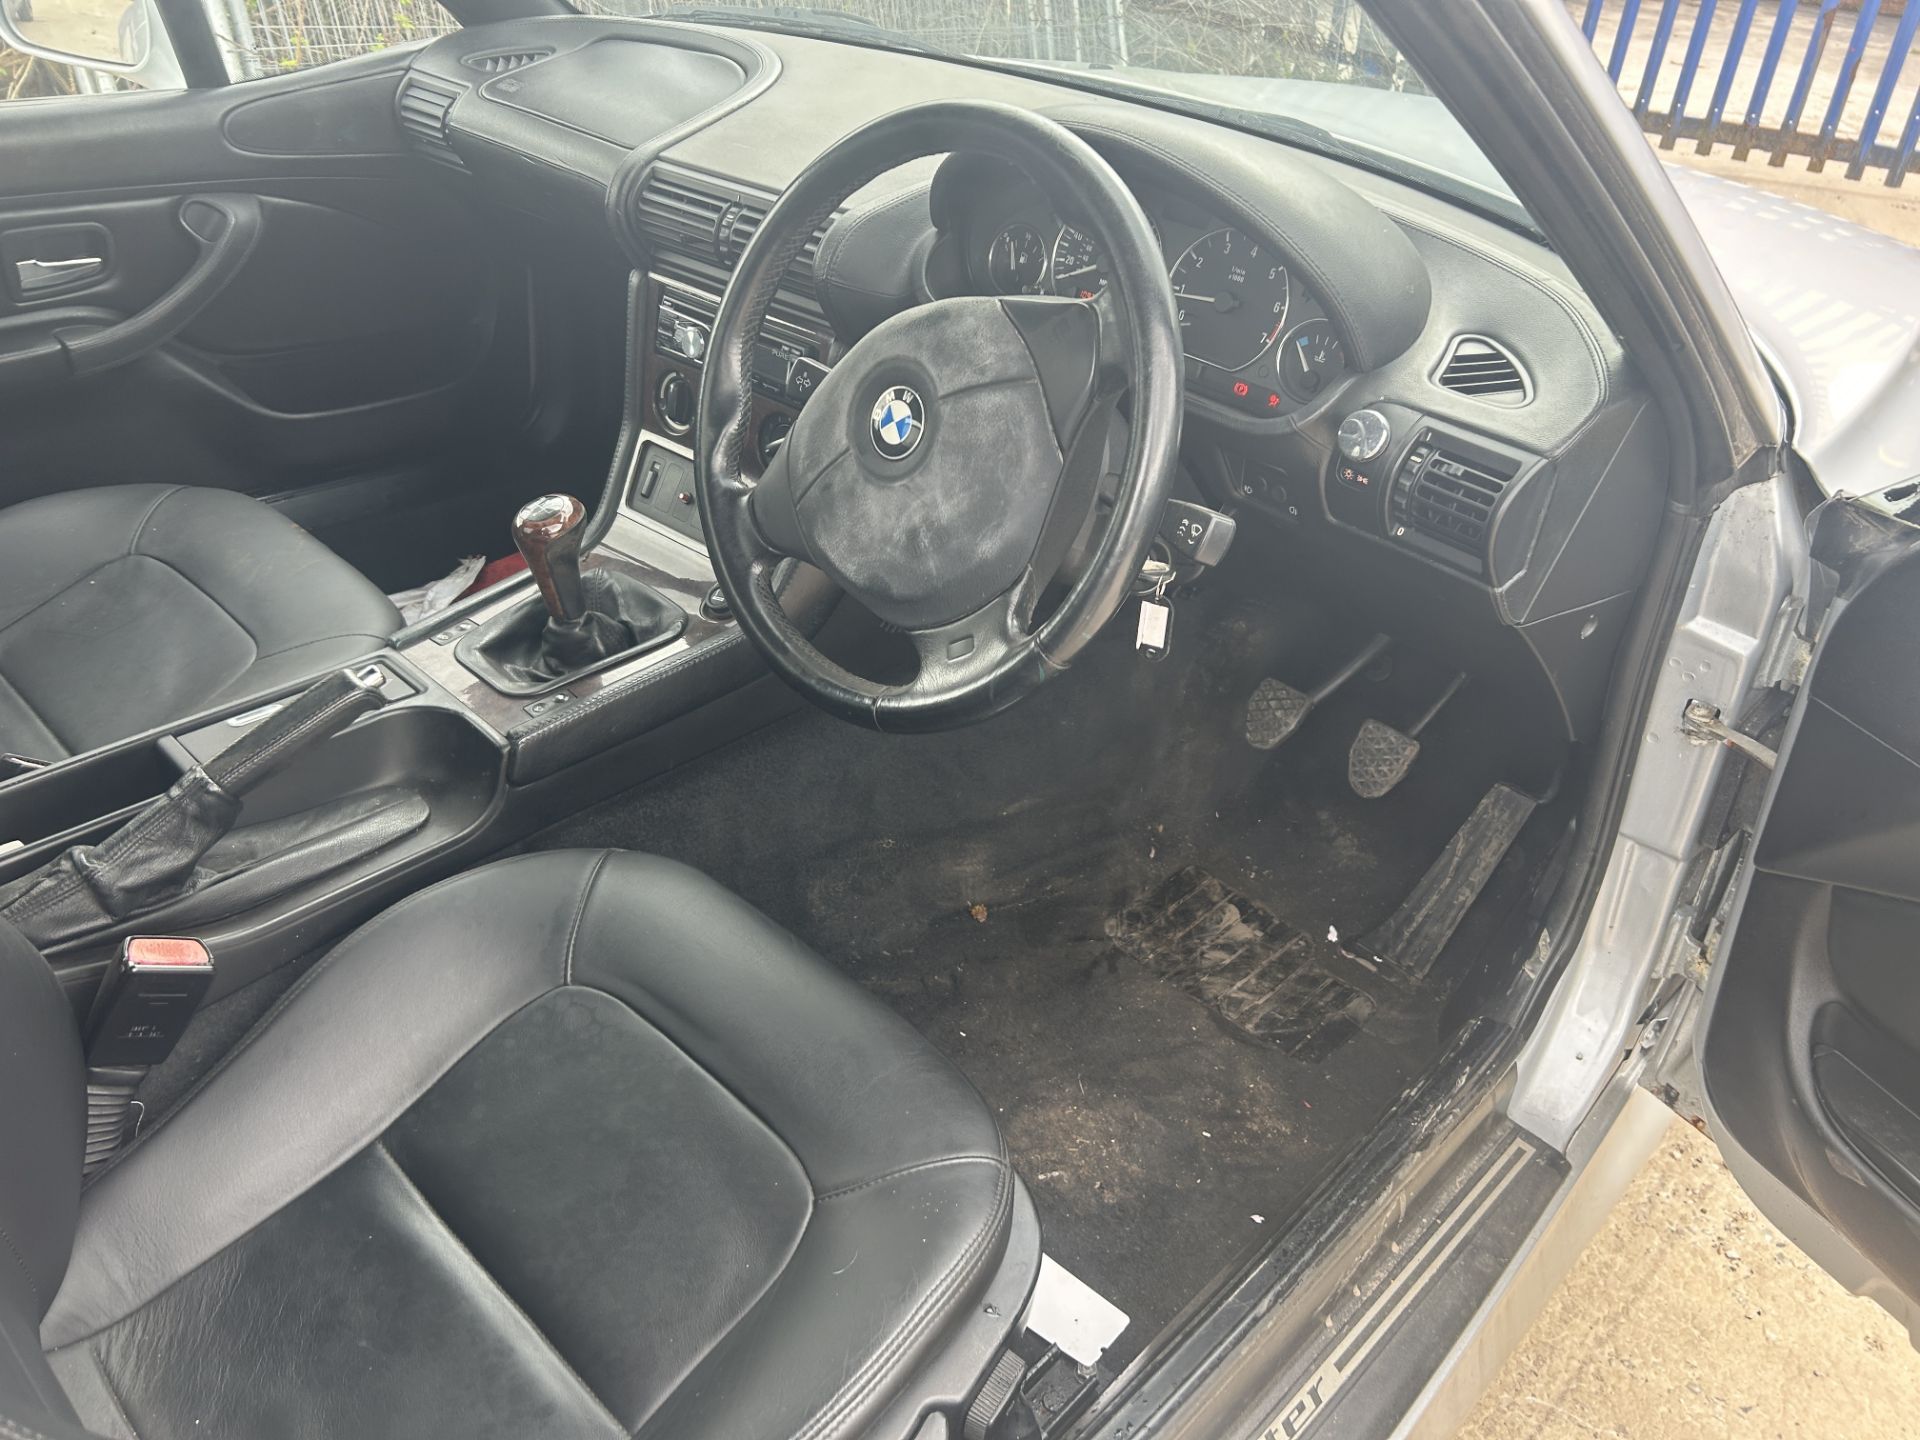 BMW Z3 Petrol Convertible | R474 CKK | 109,254 Miles | RUNNER - Image 11 of 13